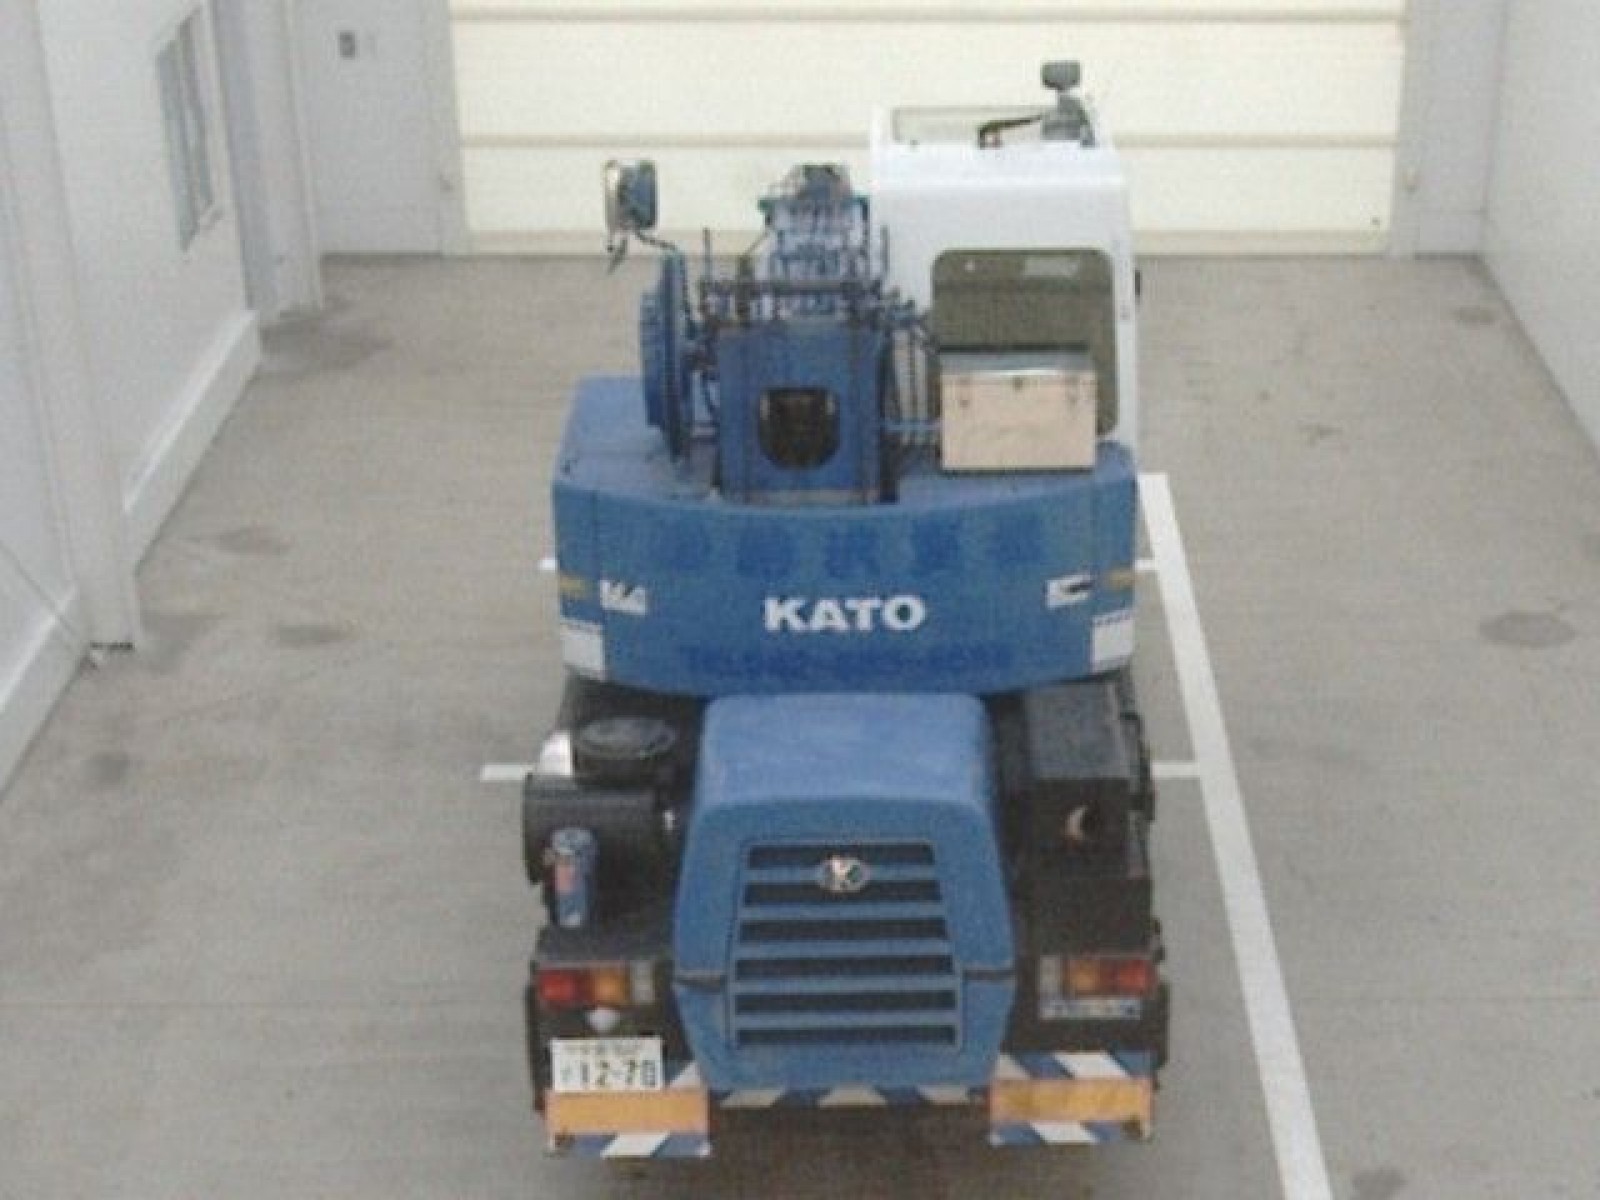 Kato Crane KR130 2007